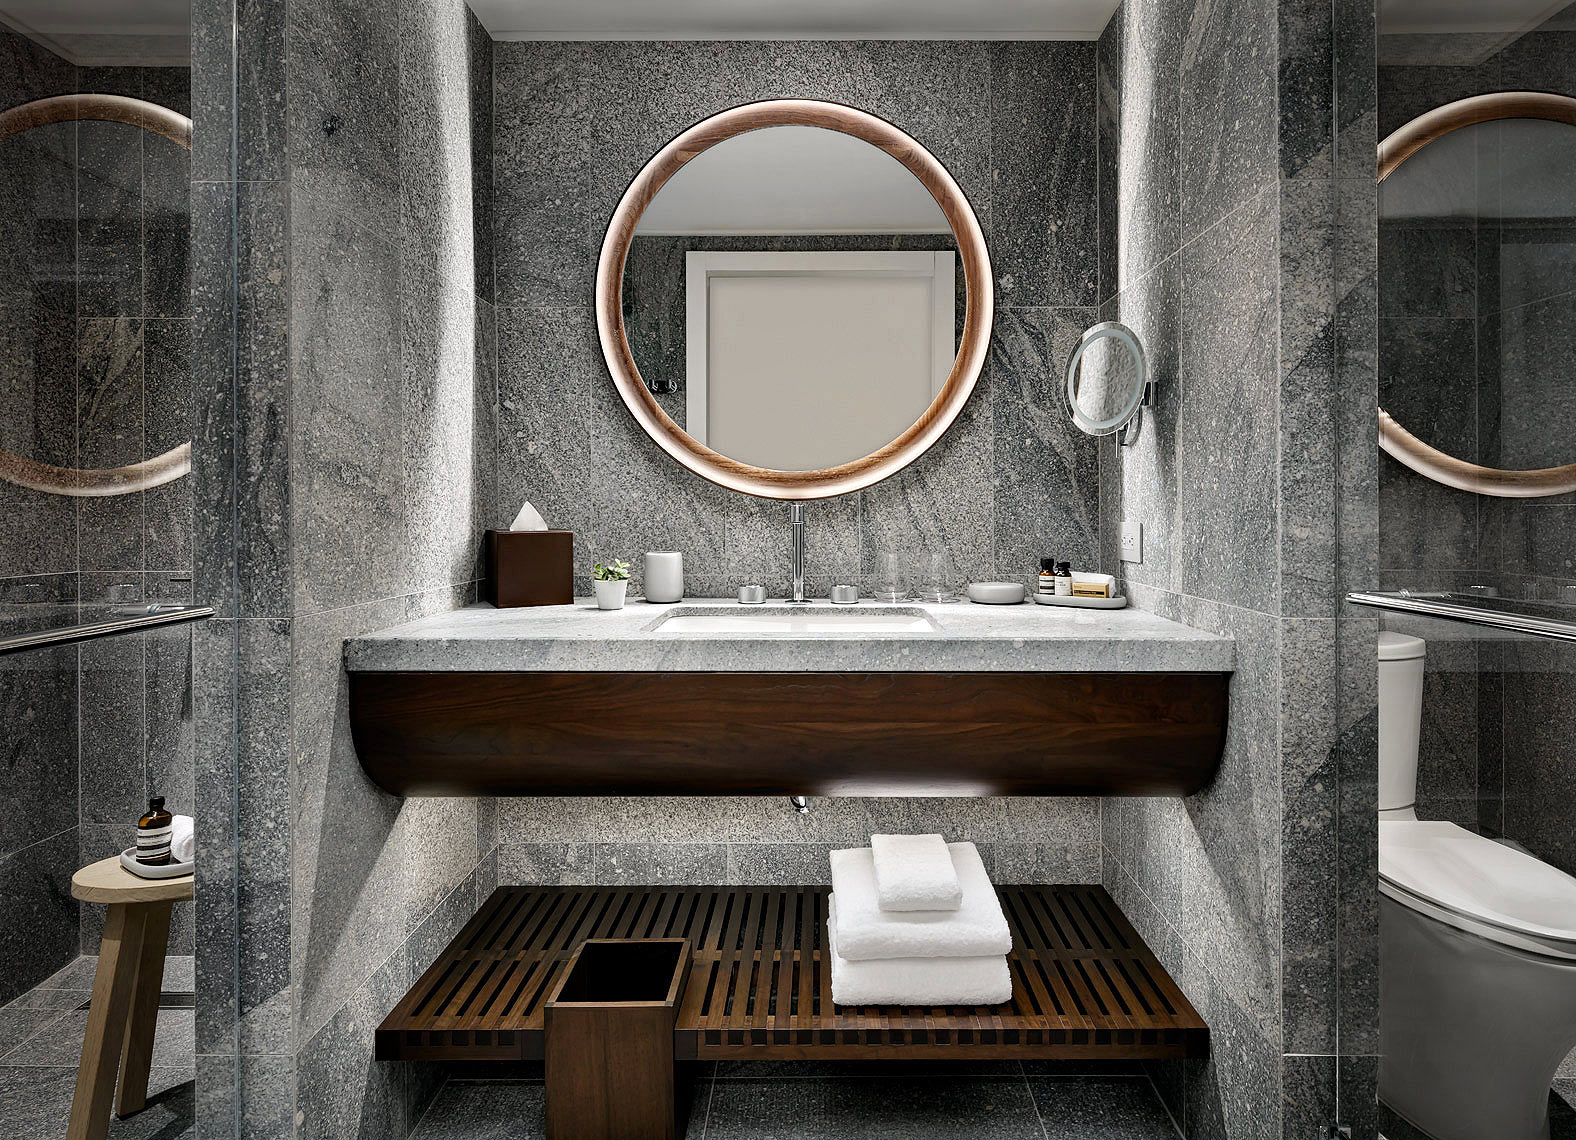 Muir Hotel, Halifax - Bathroom. Design by Studio Munge